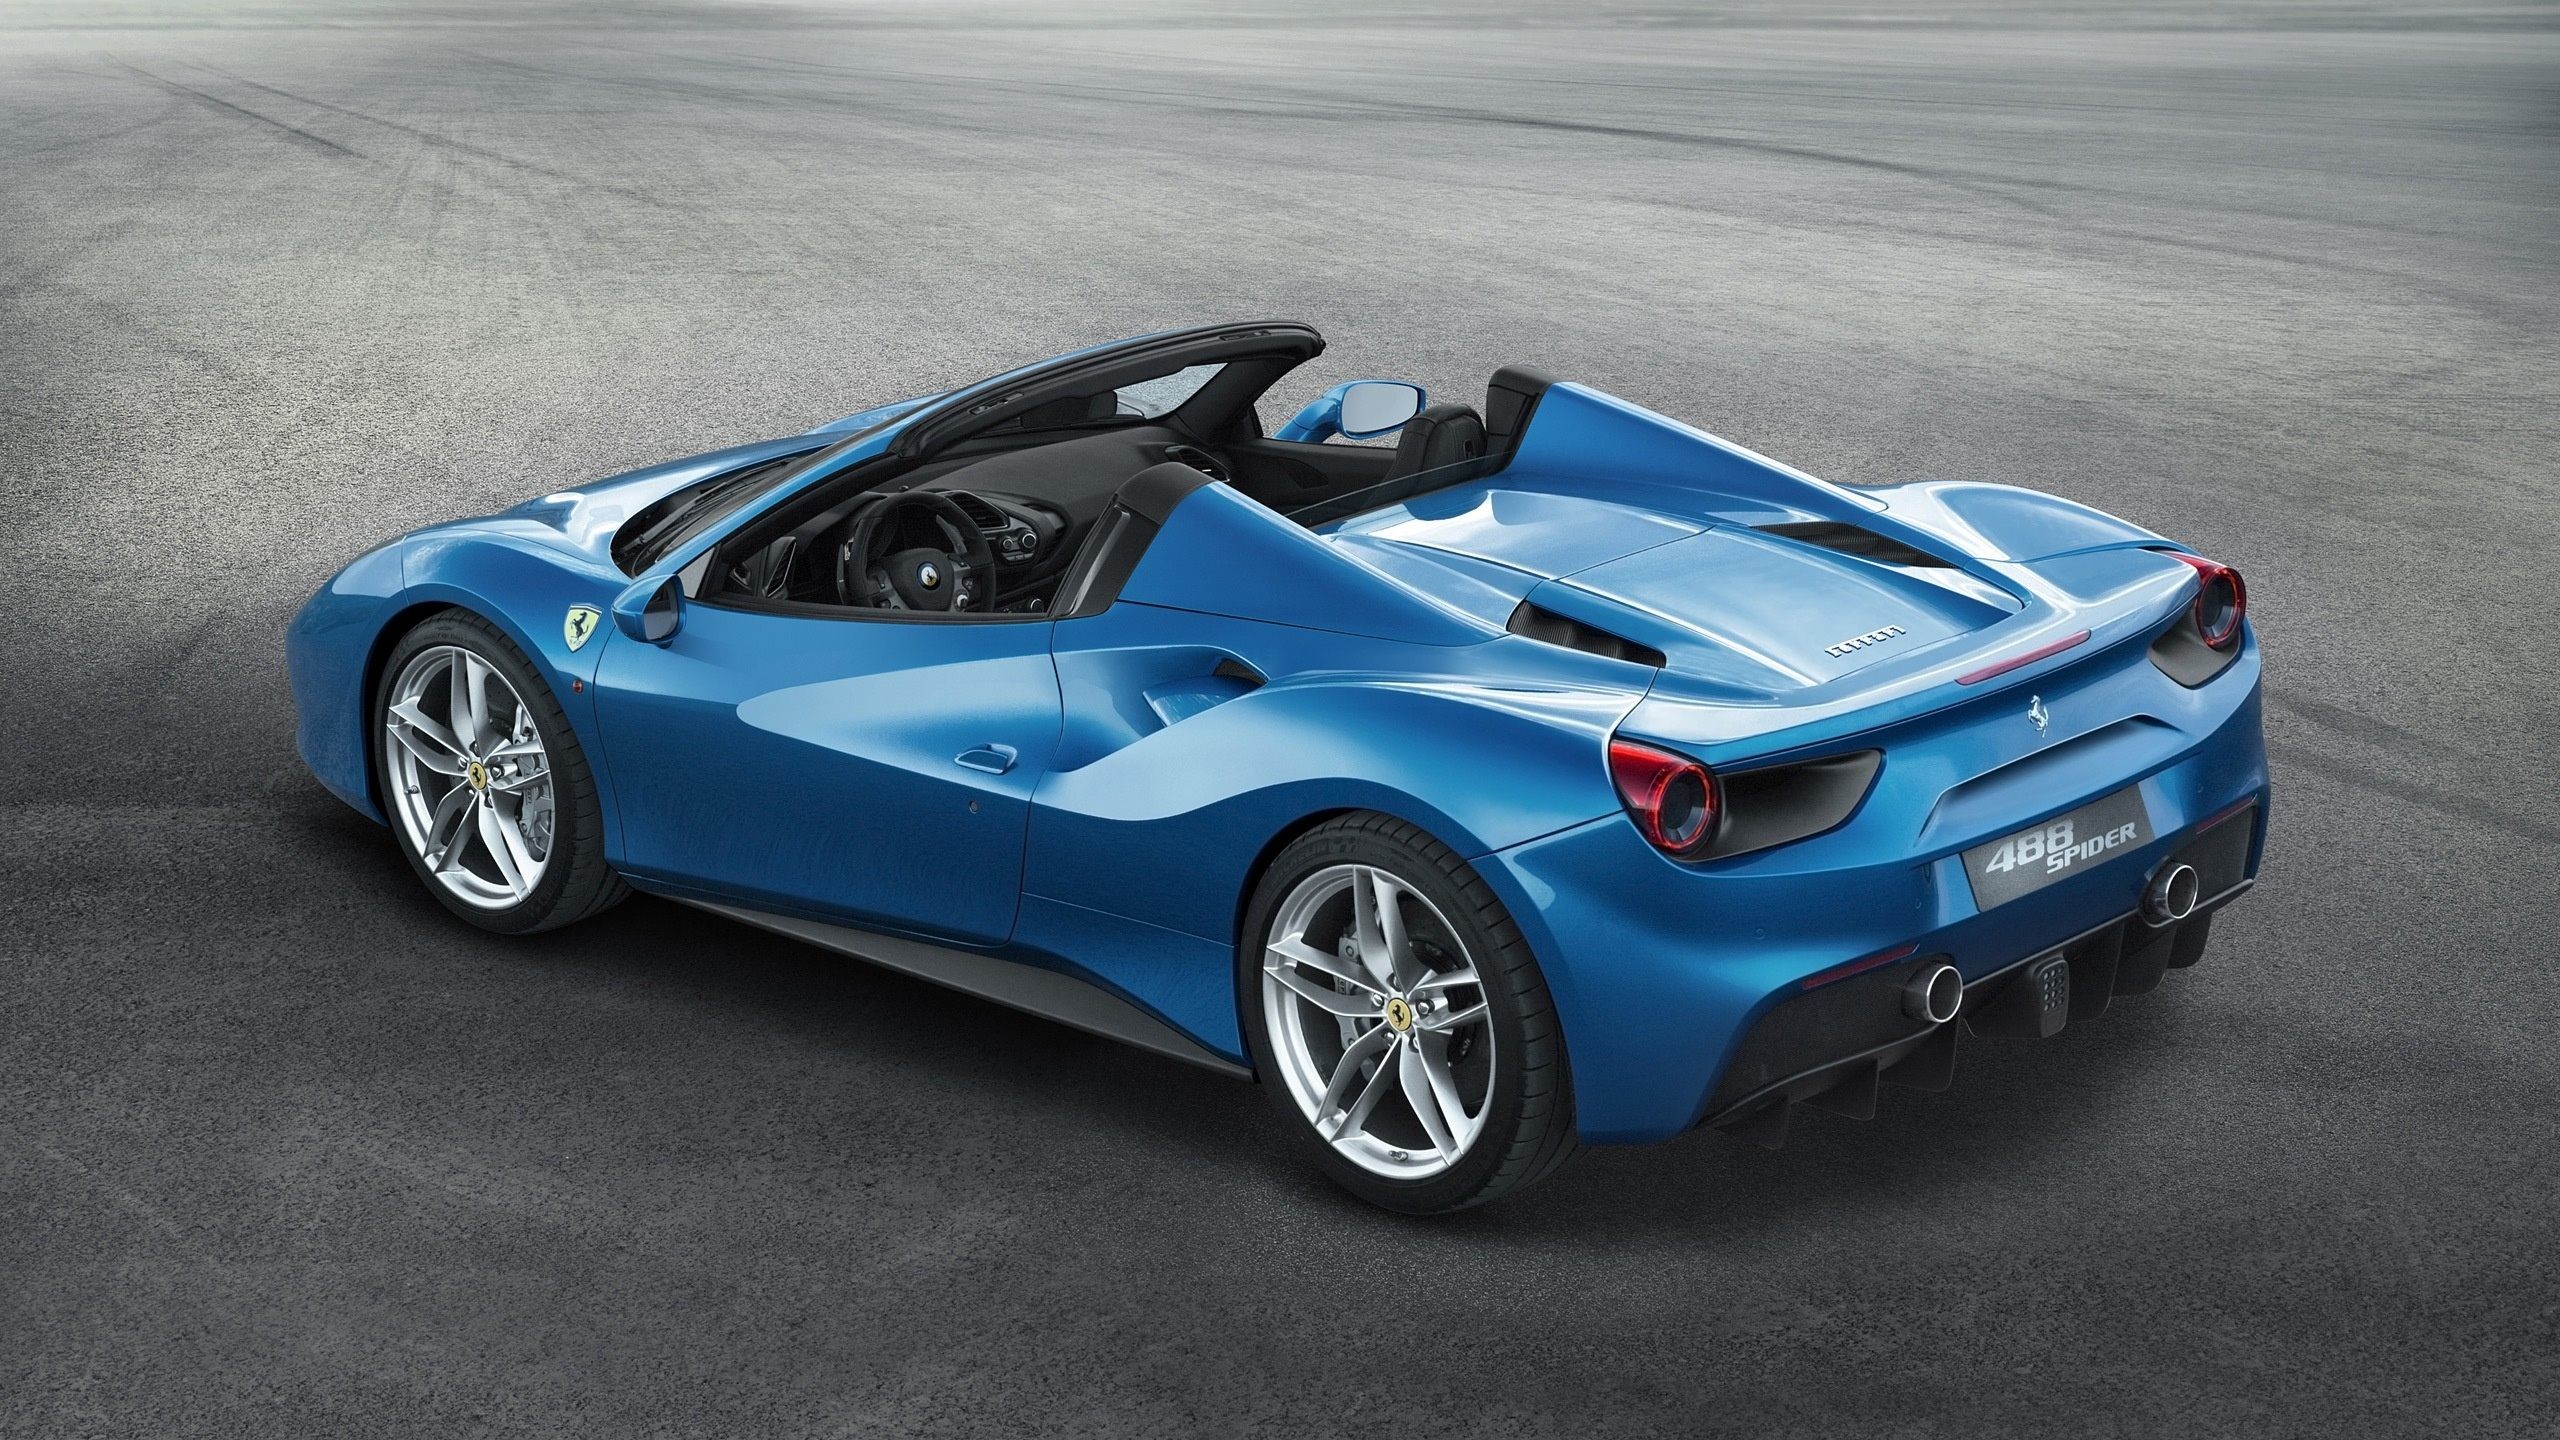 2560x1440 Ferrari 488 Spider Blue Car Wallpaper